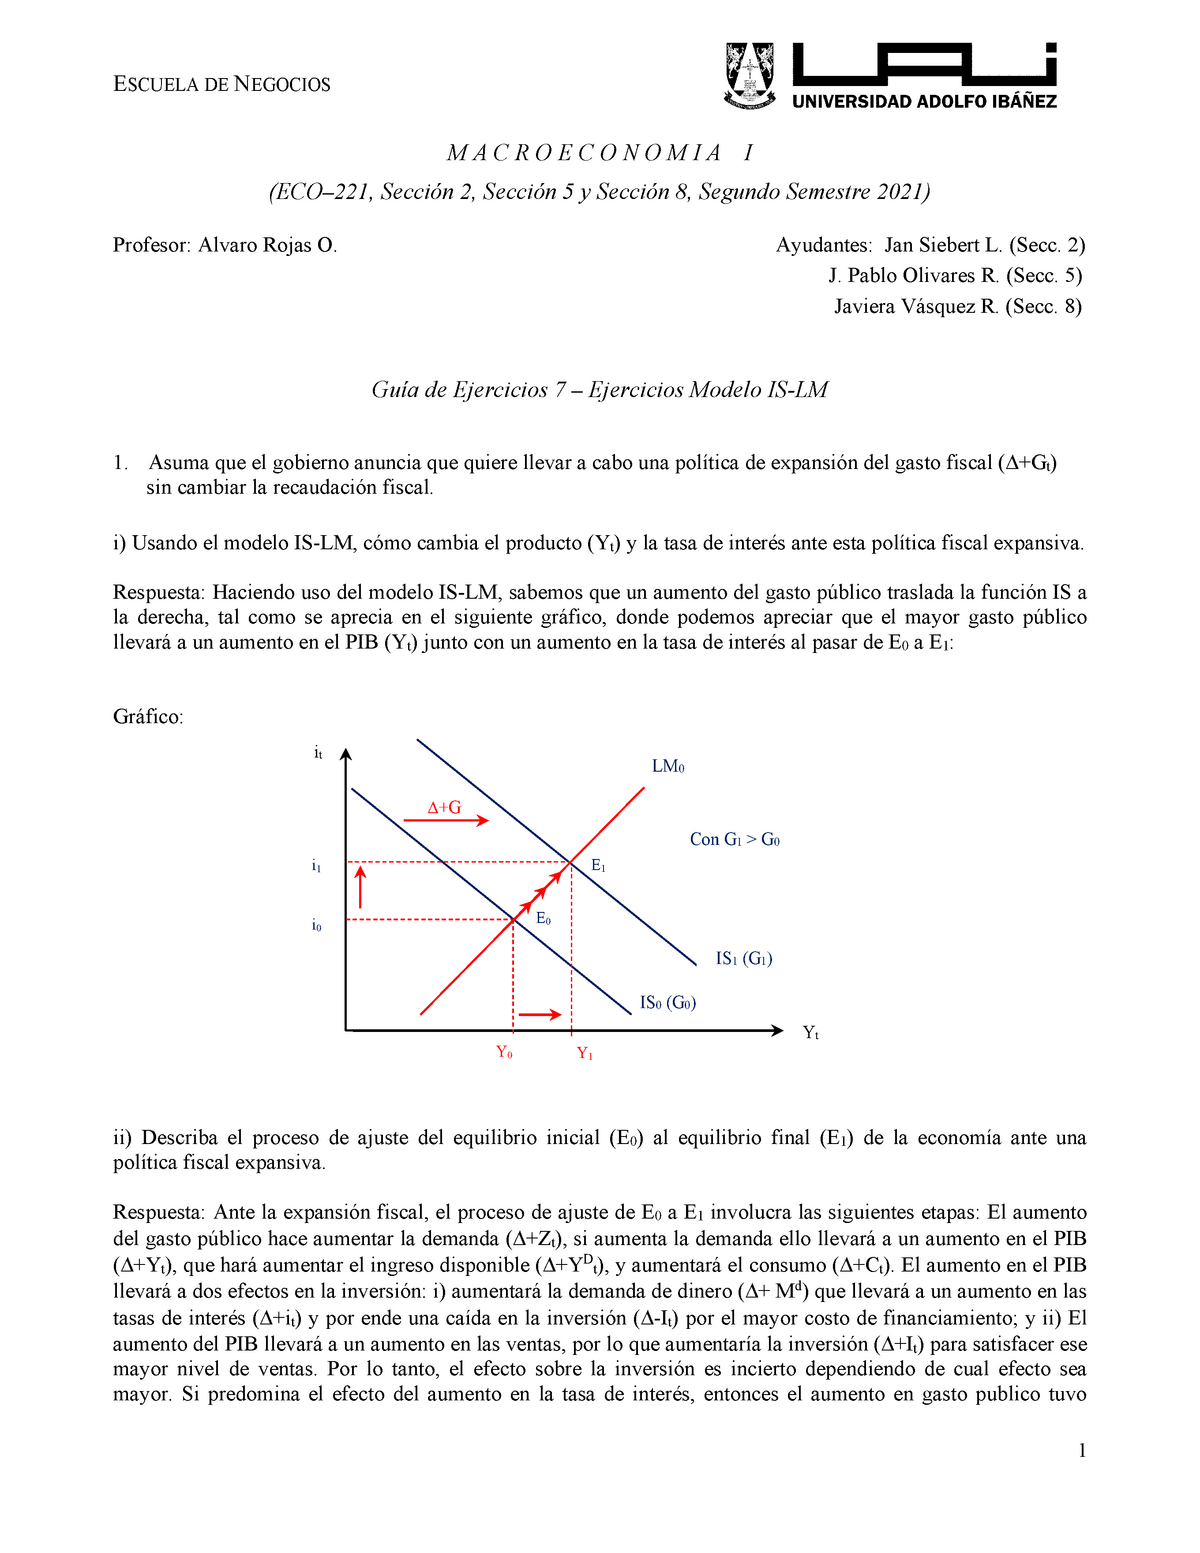 7 - Ejercicios Modelo IS-LM Macroeconomia UAI - Macroeconomía - UAI -  Studocu